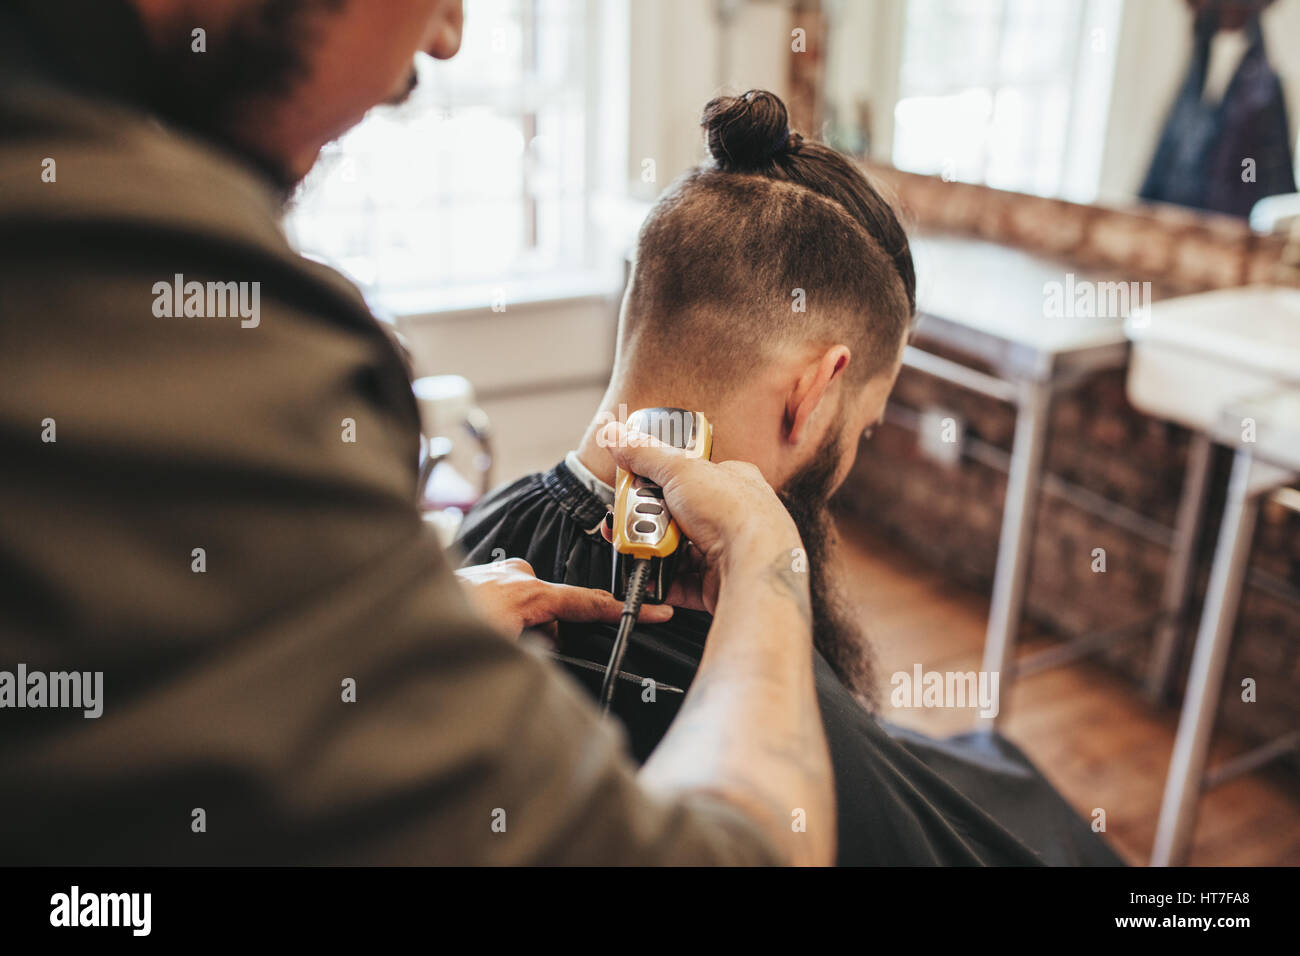 Mann Immer Haarschnitt Von Barber Salon Friseur Haare Schneiden Des Clients Mit Haar Trimmer Maschine Stockfotografie Alamy